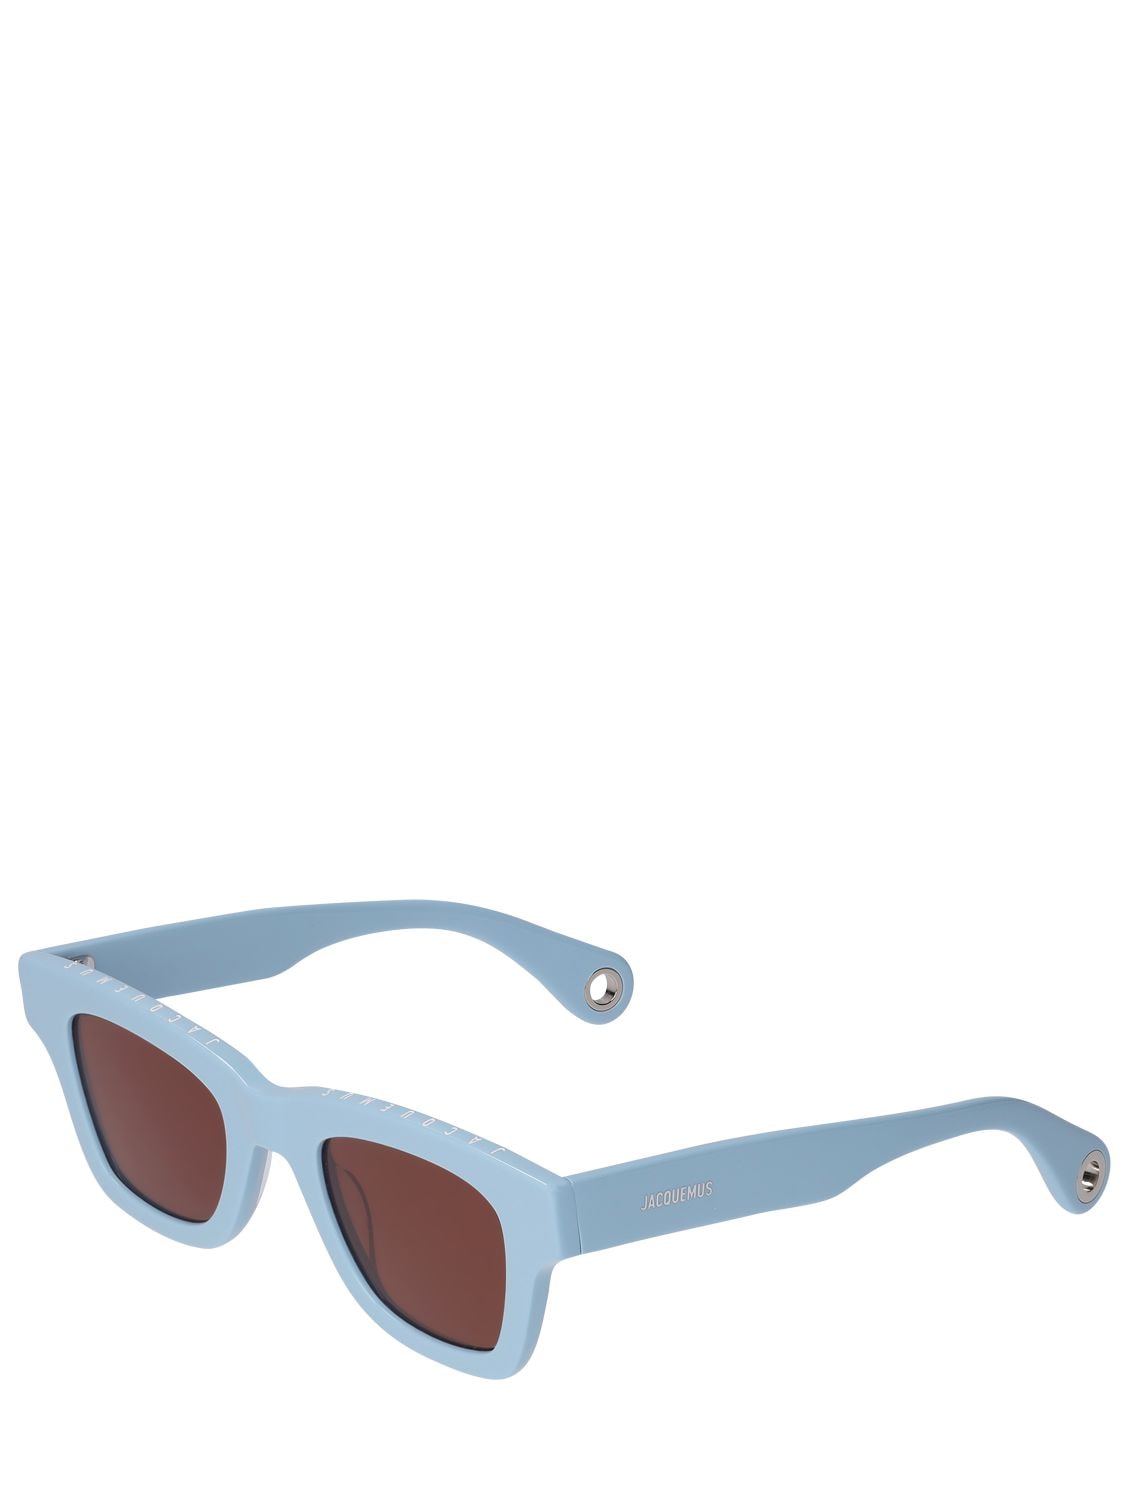 Shop Jacquemus Les Lunettes Nocio Sunglasses In Blue,brown